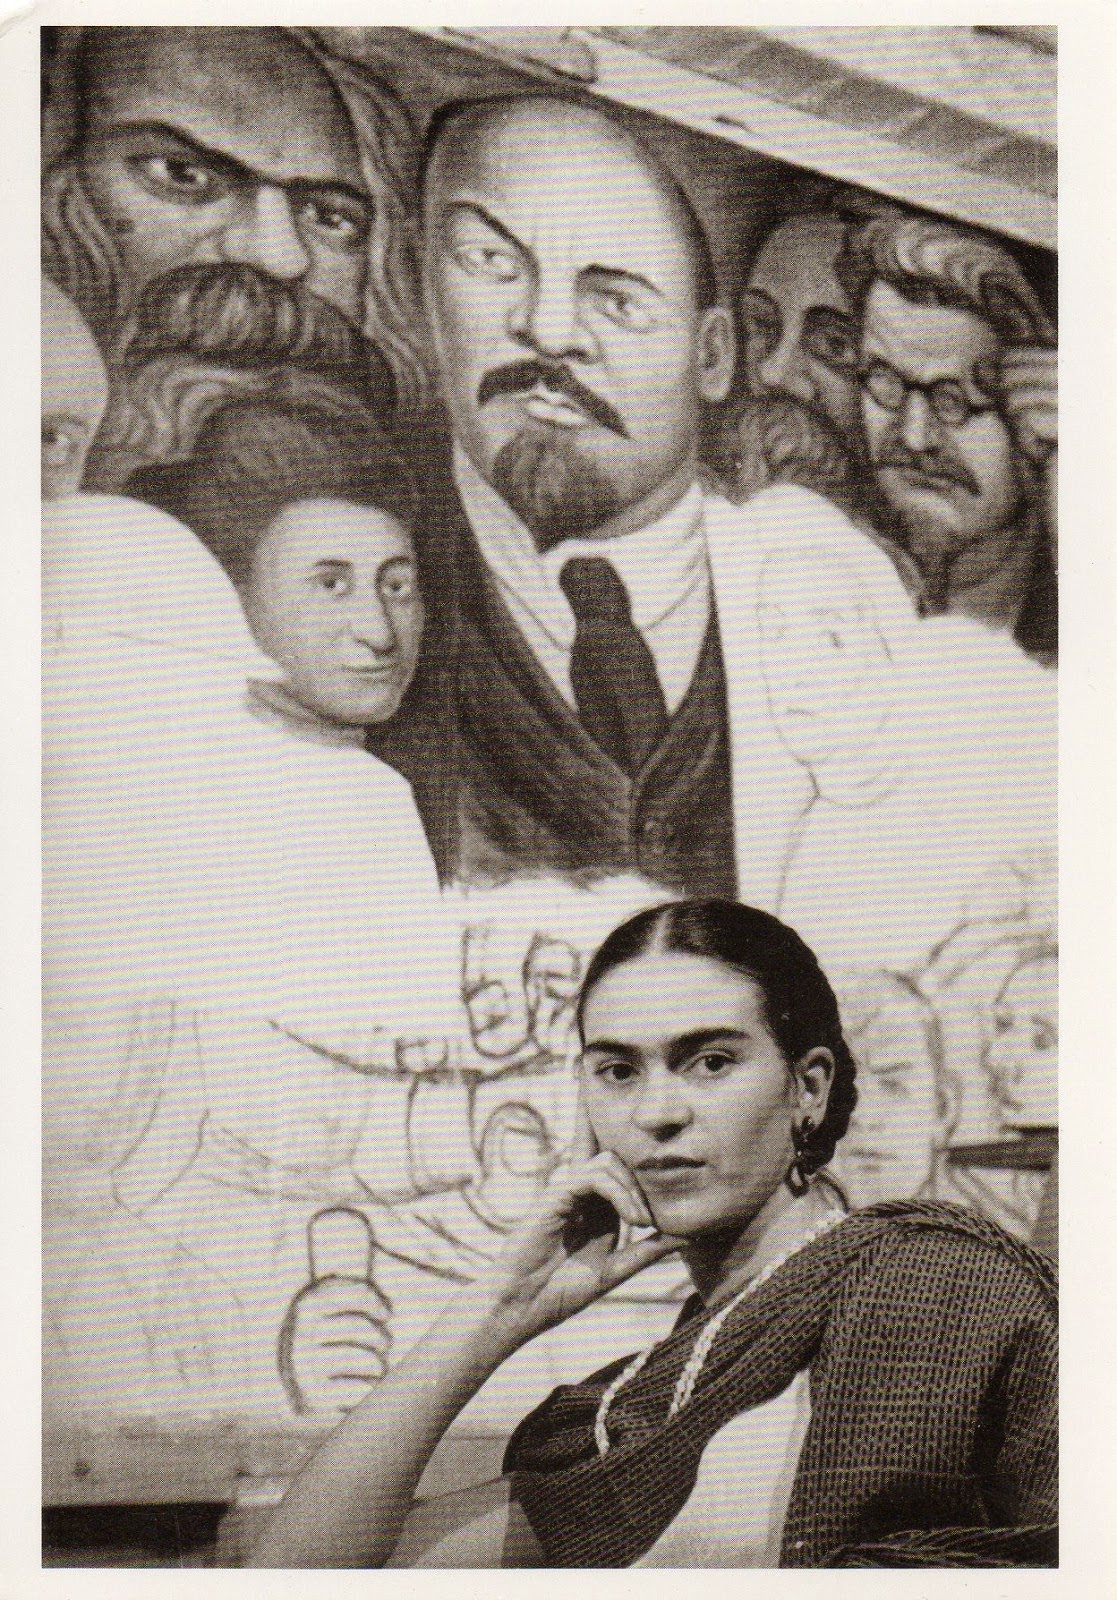 Amazing Historical Photo of Frida Kahlo in 1933 